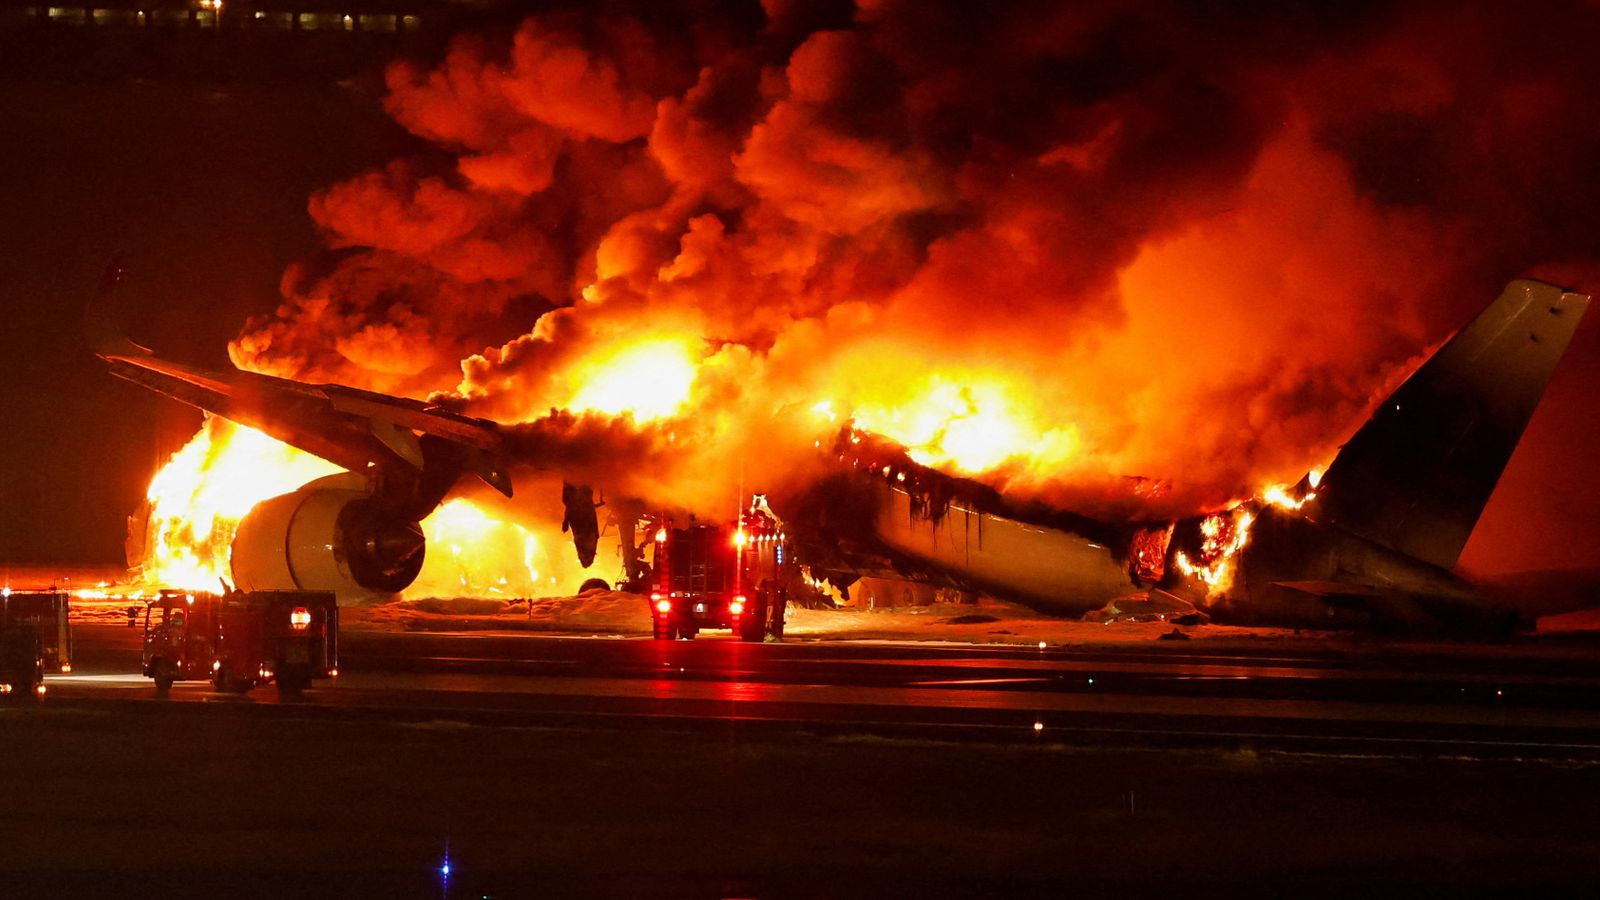 Incendie d’avion au Japon : tout ce que nous savons jusqu’à présent |  Nouvelles du monde